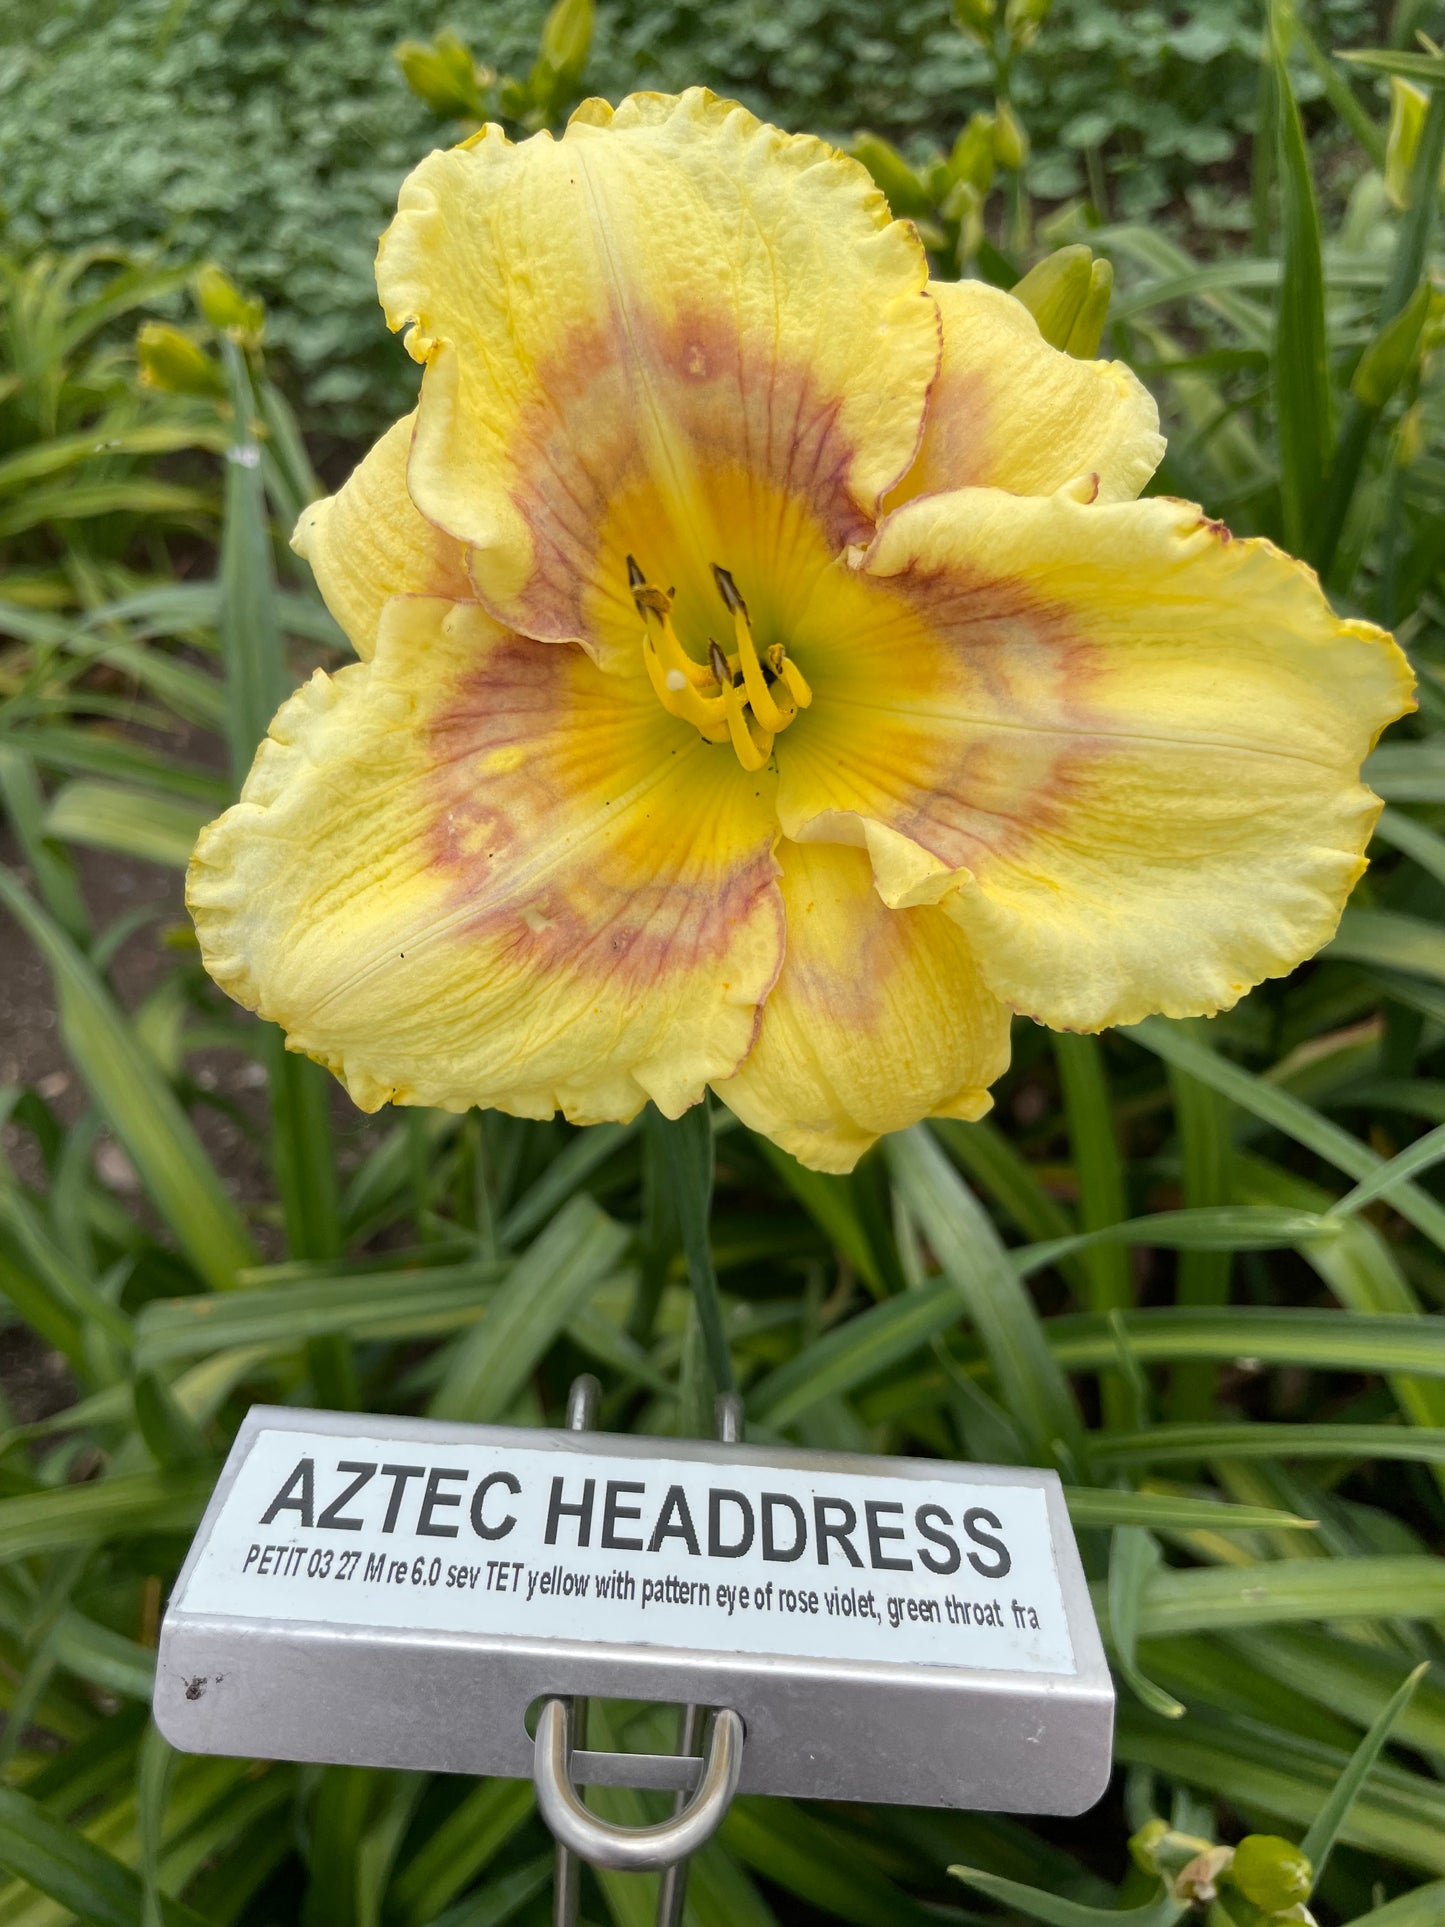 AZTEC HEADDRESS